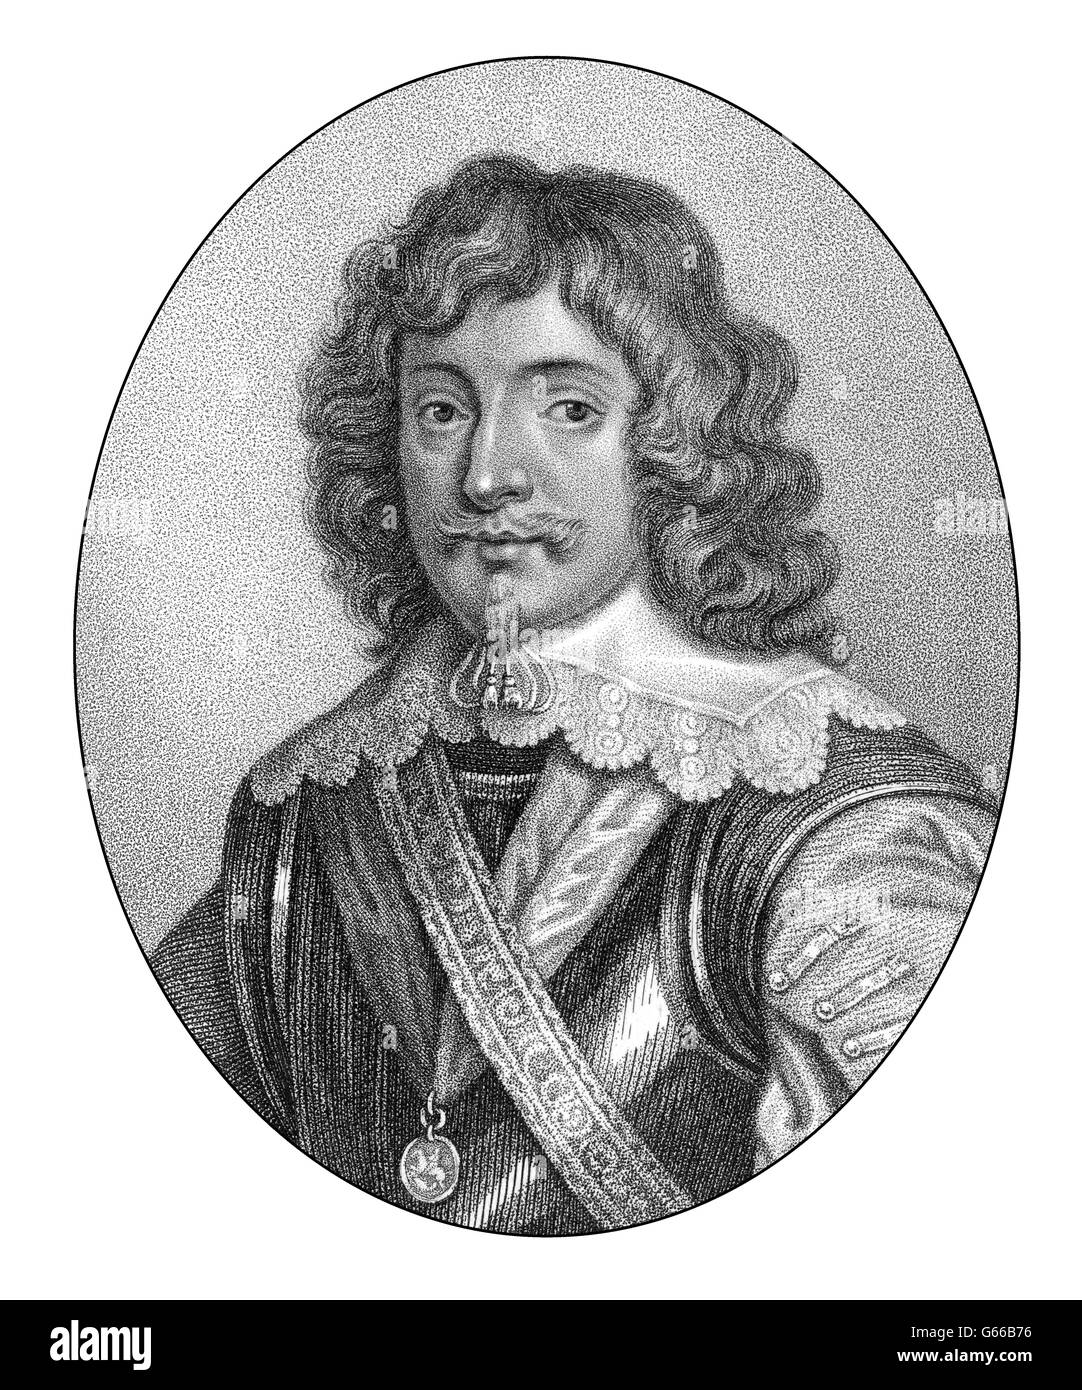 Henry Rich, 1er comte de Hollande, le Seigneur de Kensington, 1590-1649, un courtisan anglais, les pairs et soldat Banque D'Images